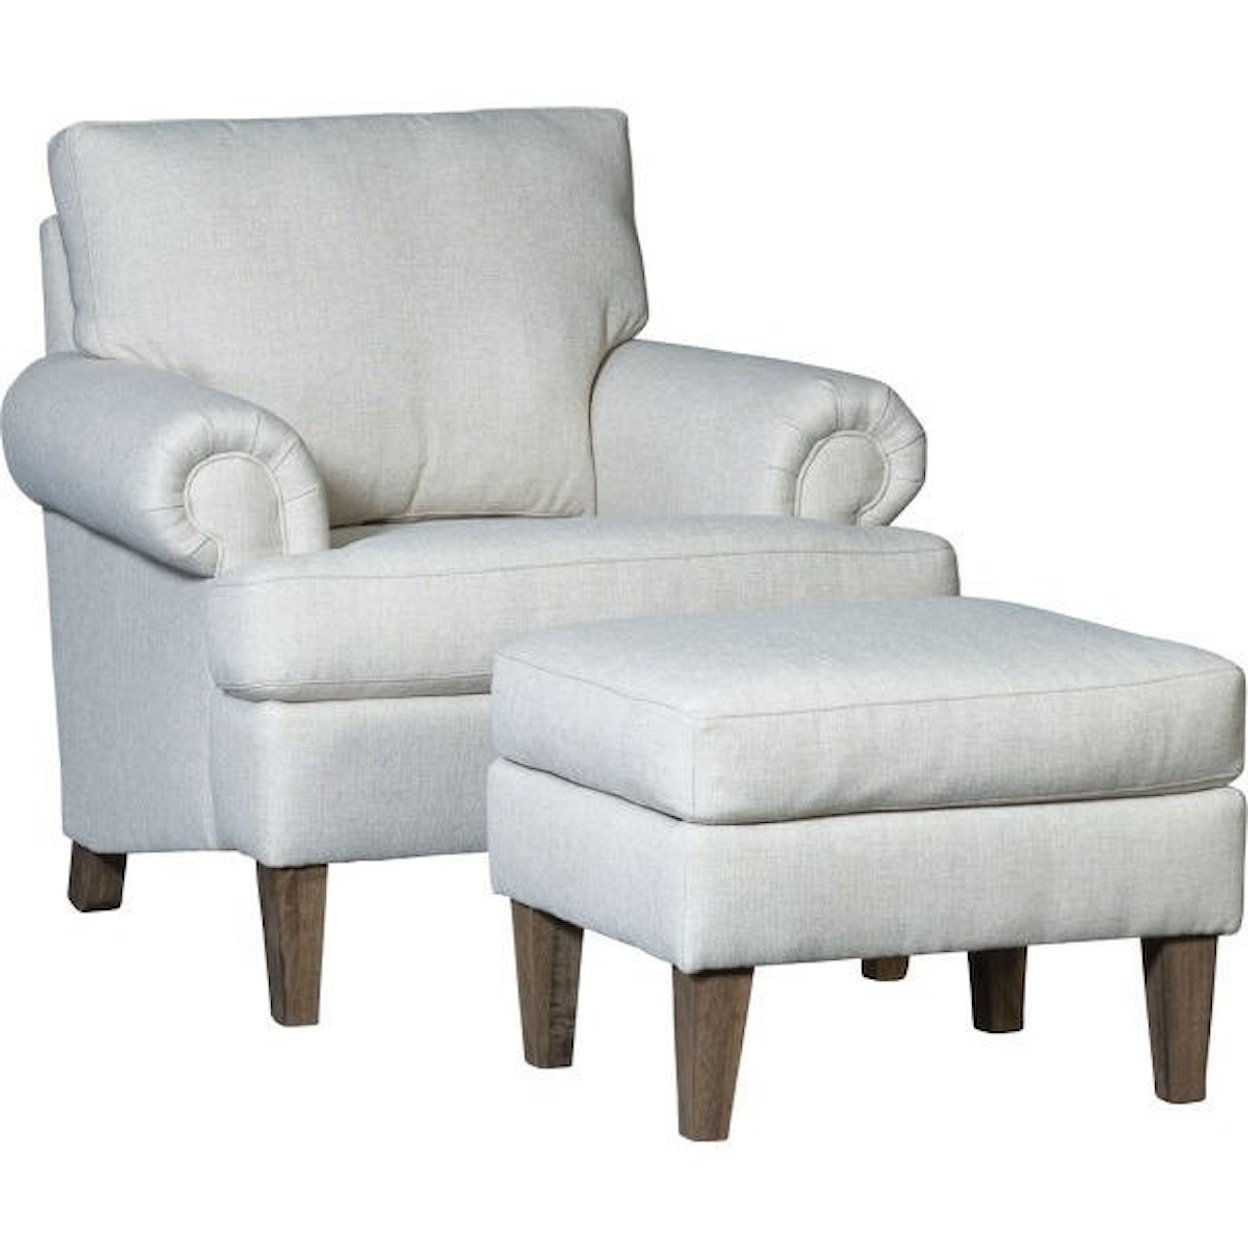 Mayo 5070 Chair and Ottoman